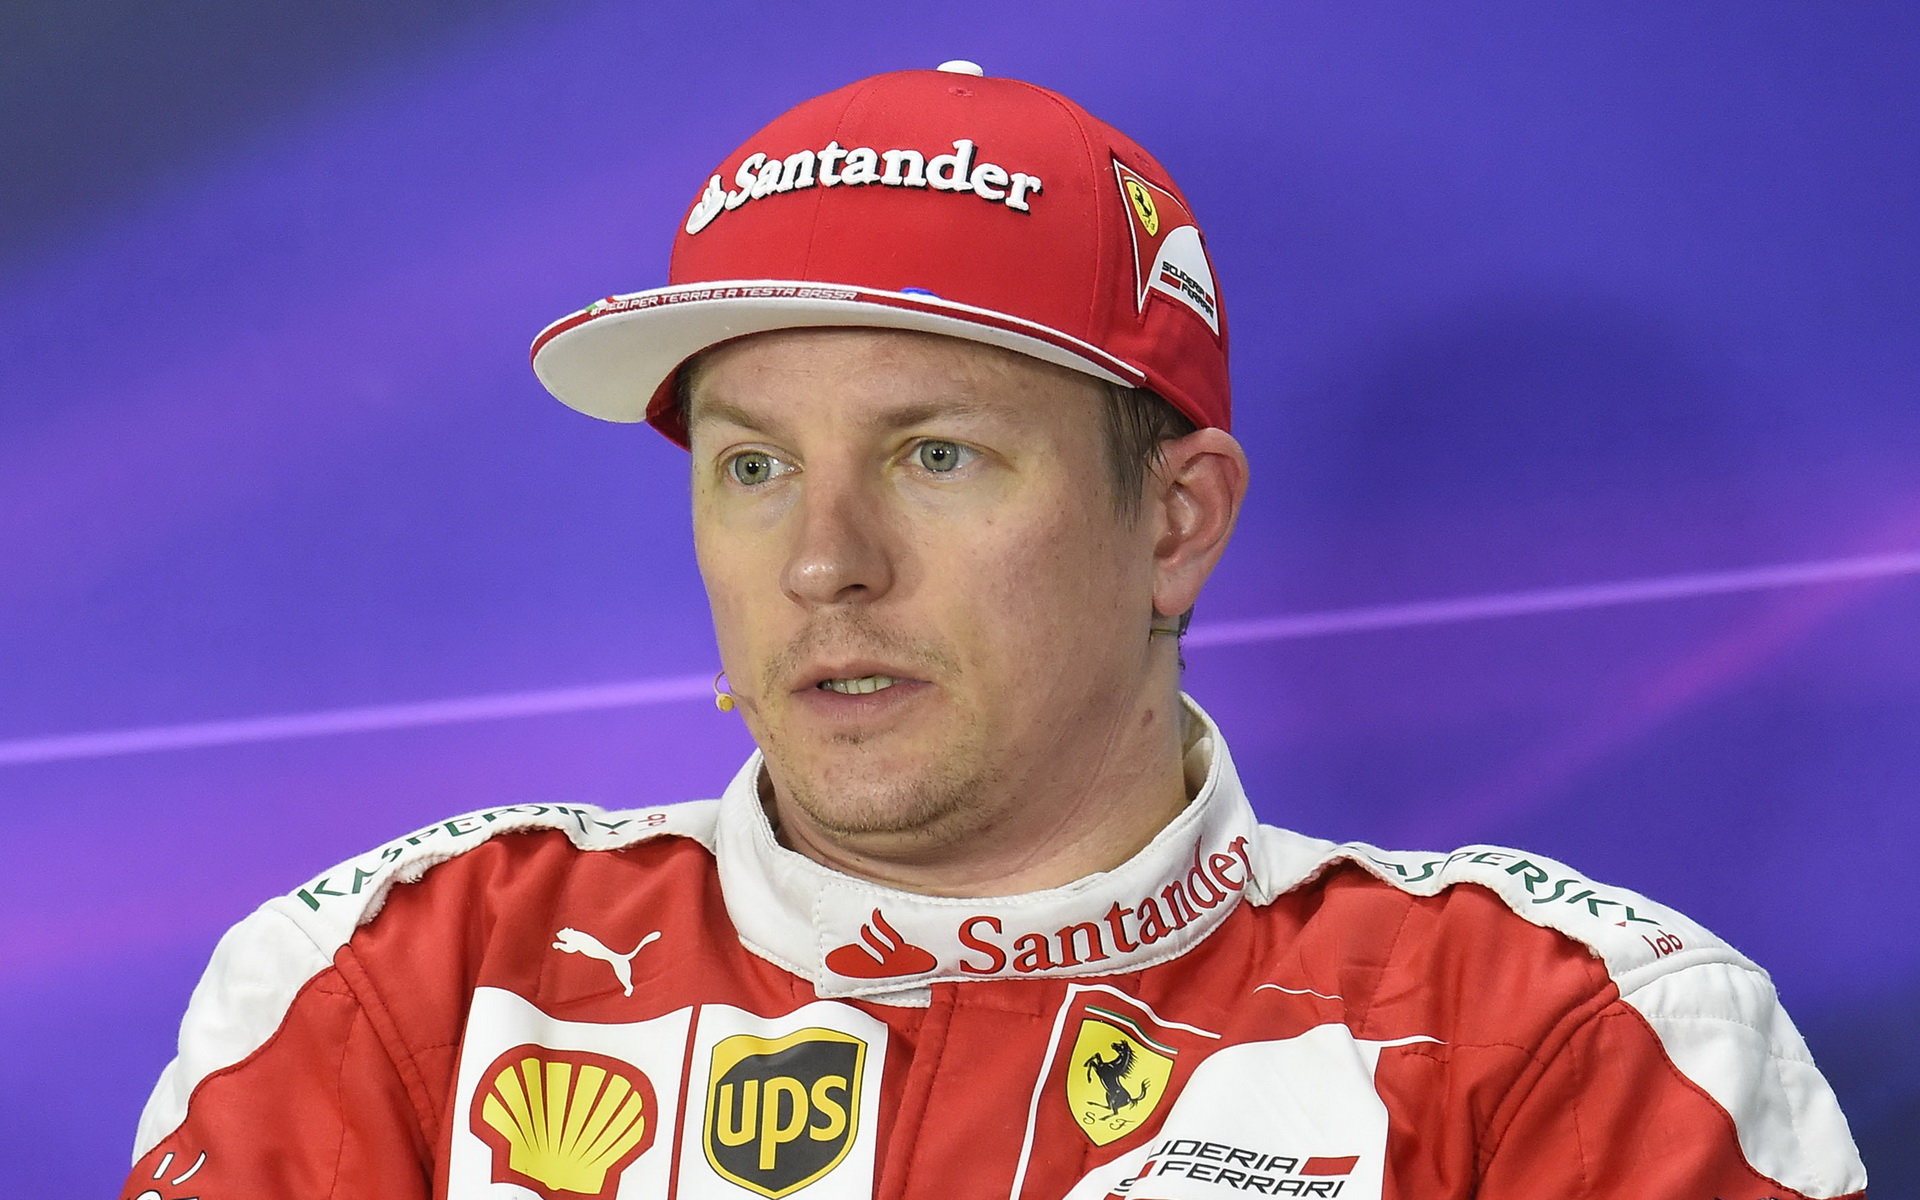 Kimi Räikkönen při tiskovce po kvalifikaci v Číně